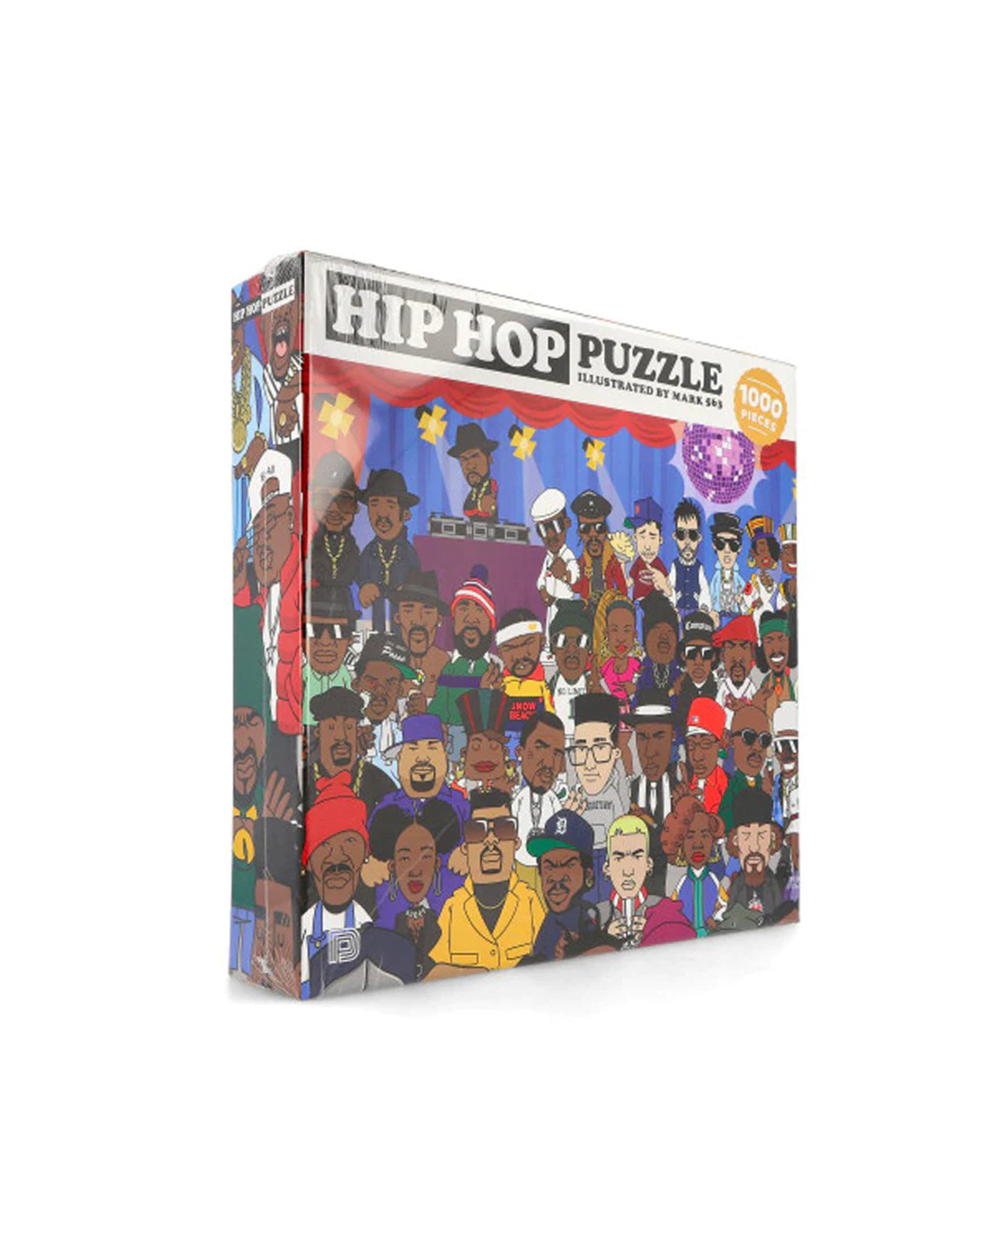 Hip-Hop Puzzle